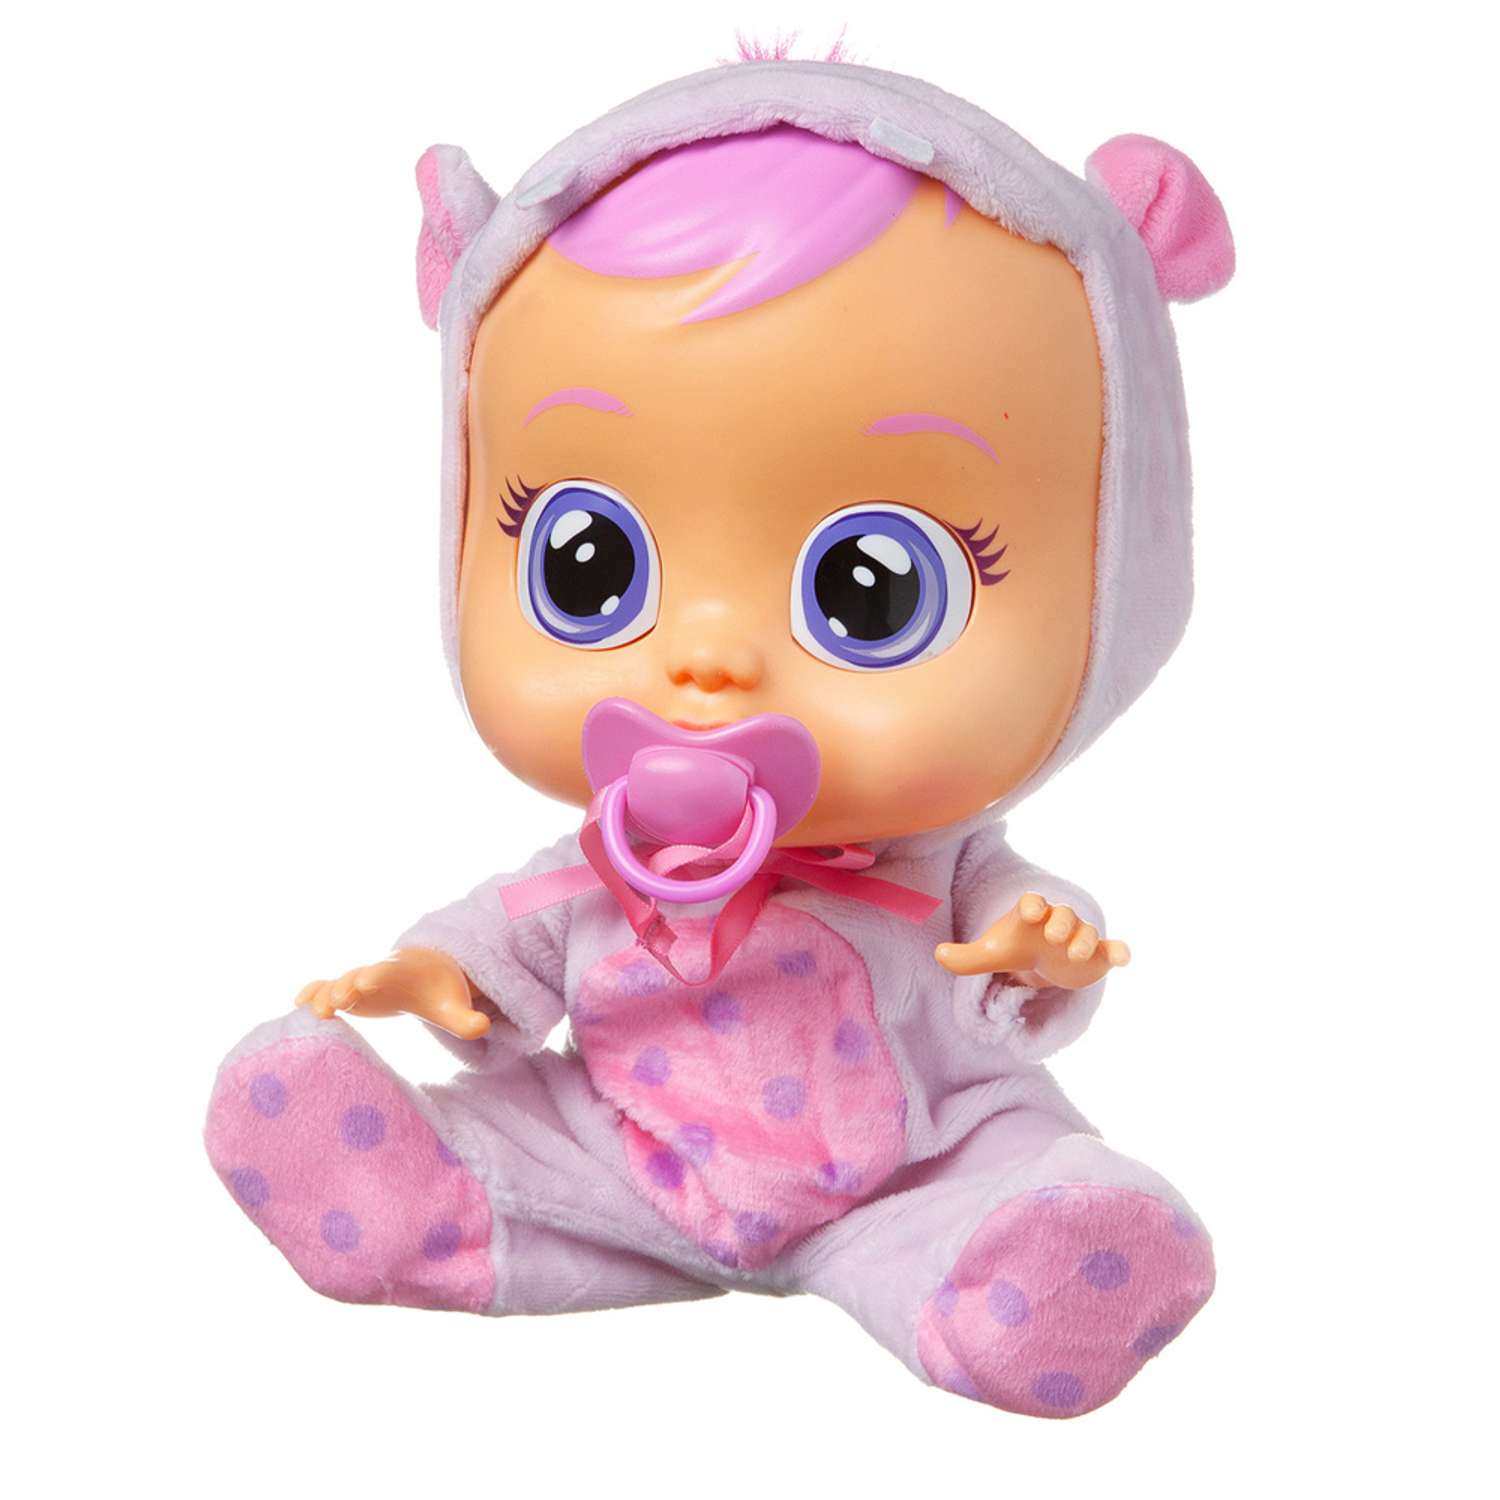 Купить куклу crying babies. Кукла IMC Toys «Cry Babies». Пупс Cry Babies. Кукла ББФ Cry Babies. IMC Toys Cry Babies вишня.